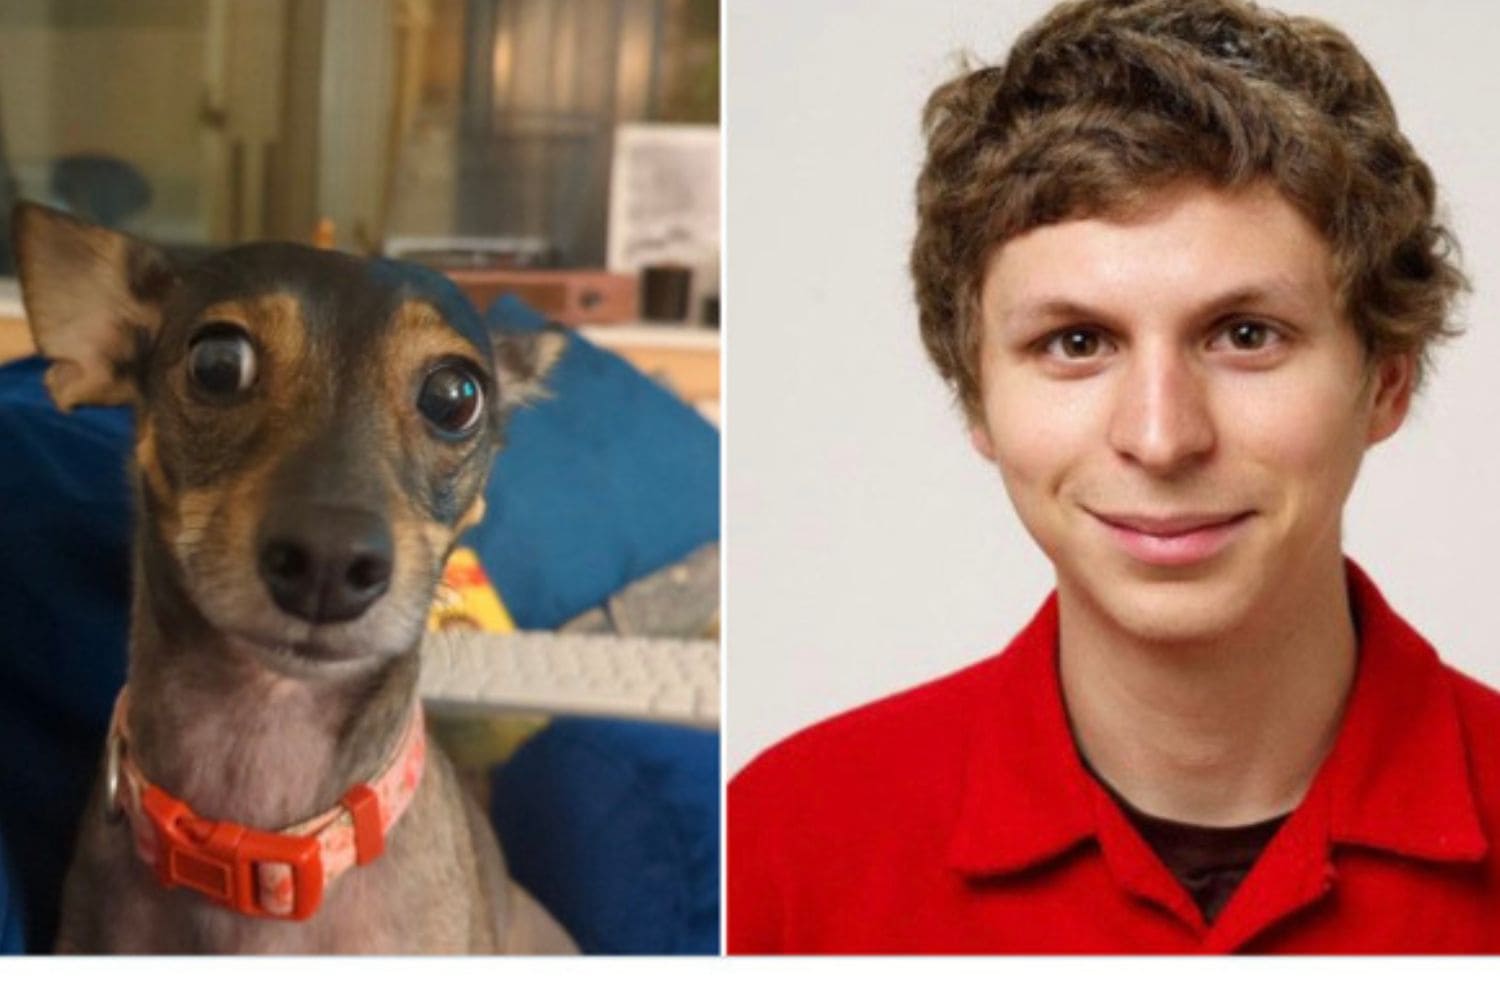 celebrity dogs look like